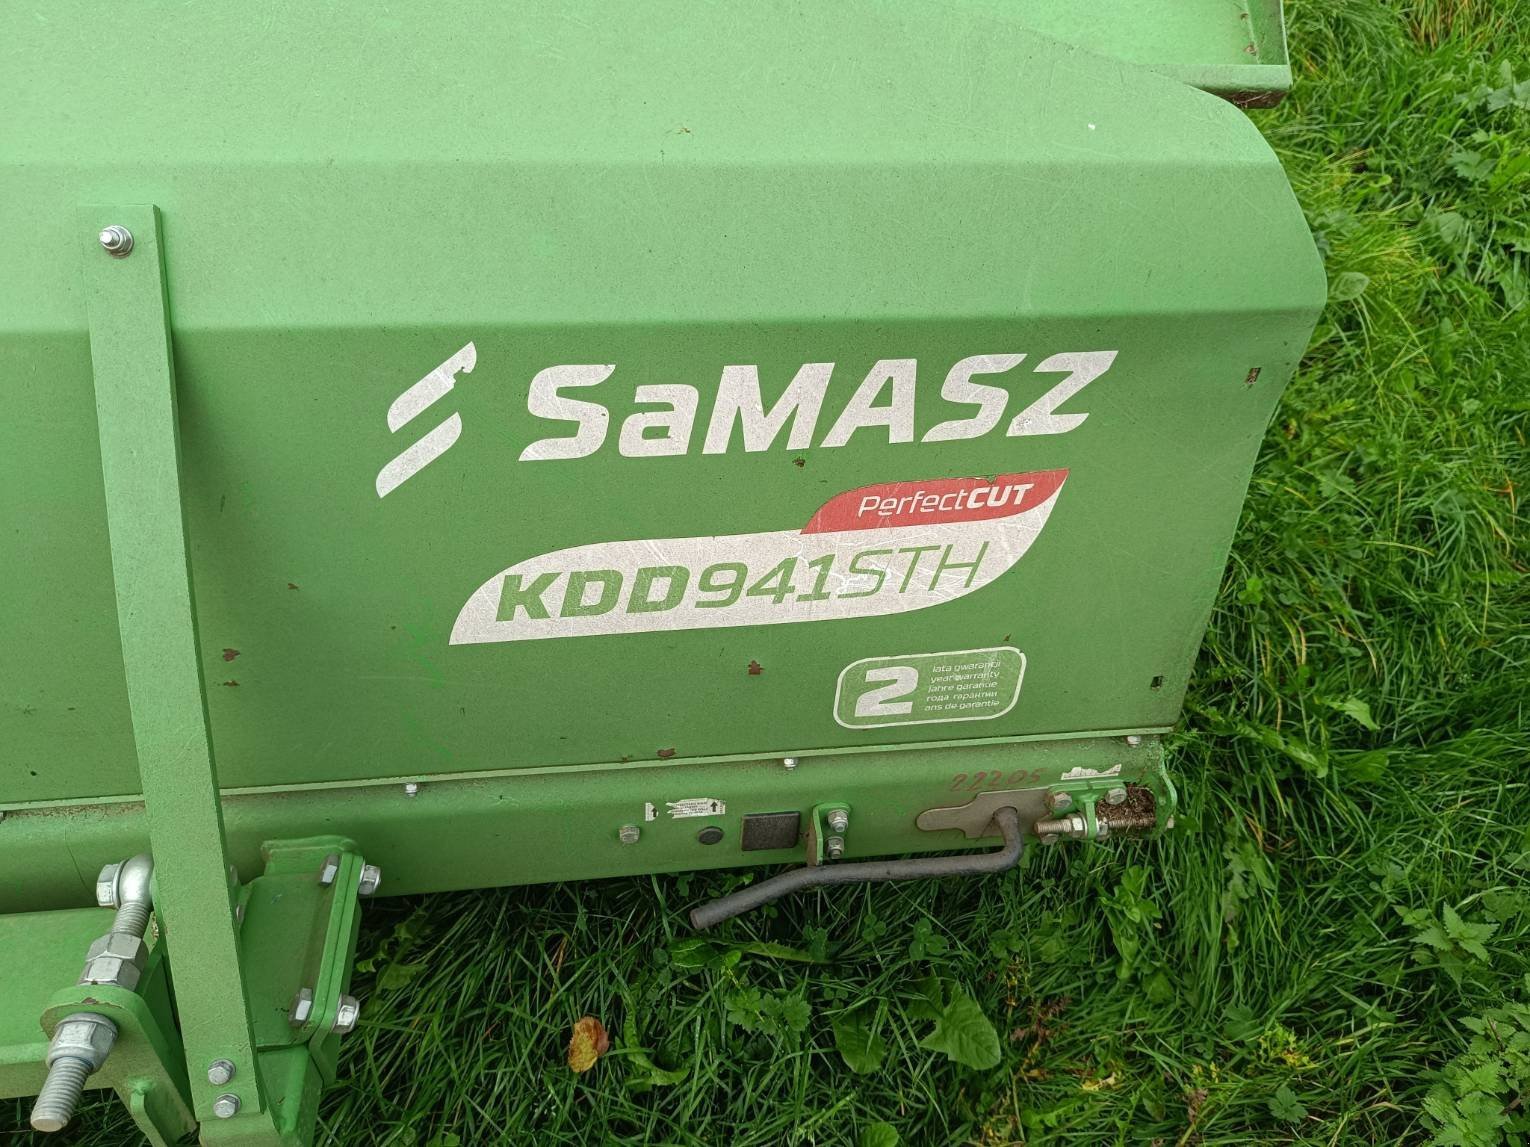 Mähwerk des Typs SaMASZ KDD941STH PerfectCUT, Gebrauchtmaschine in Trun (Bild 3)